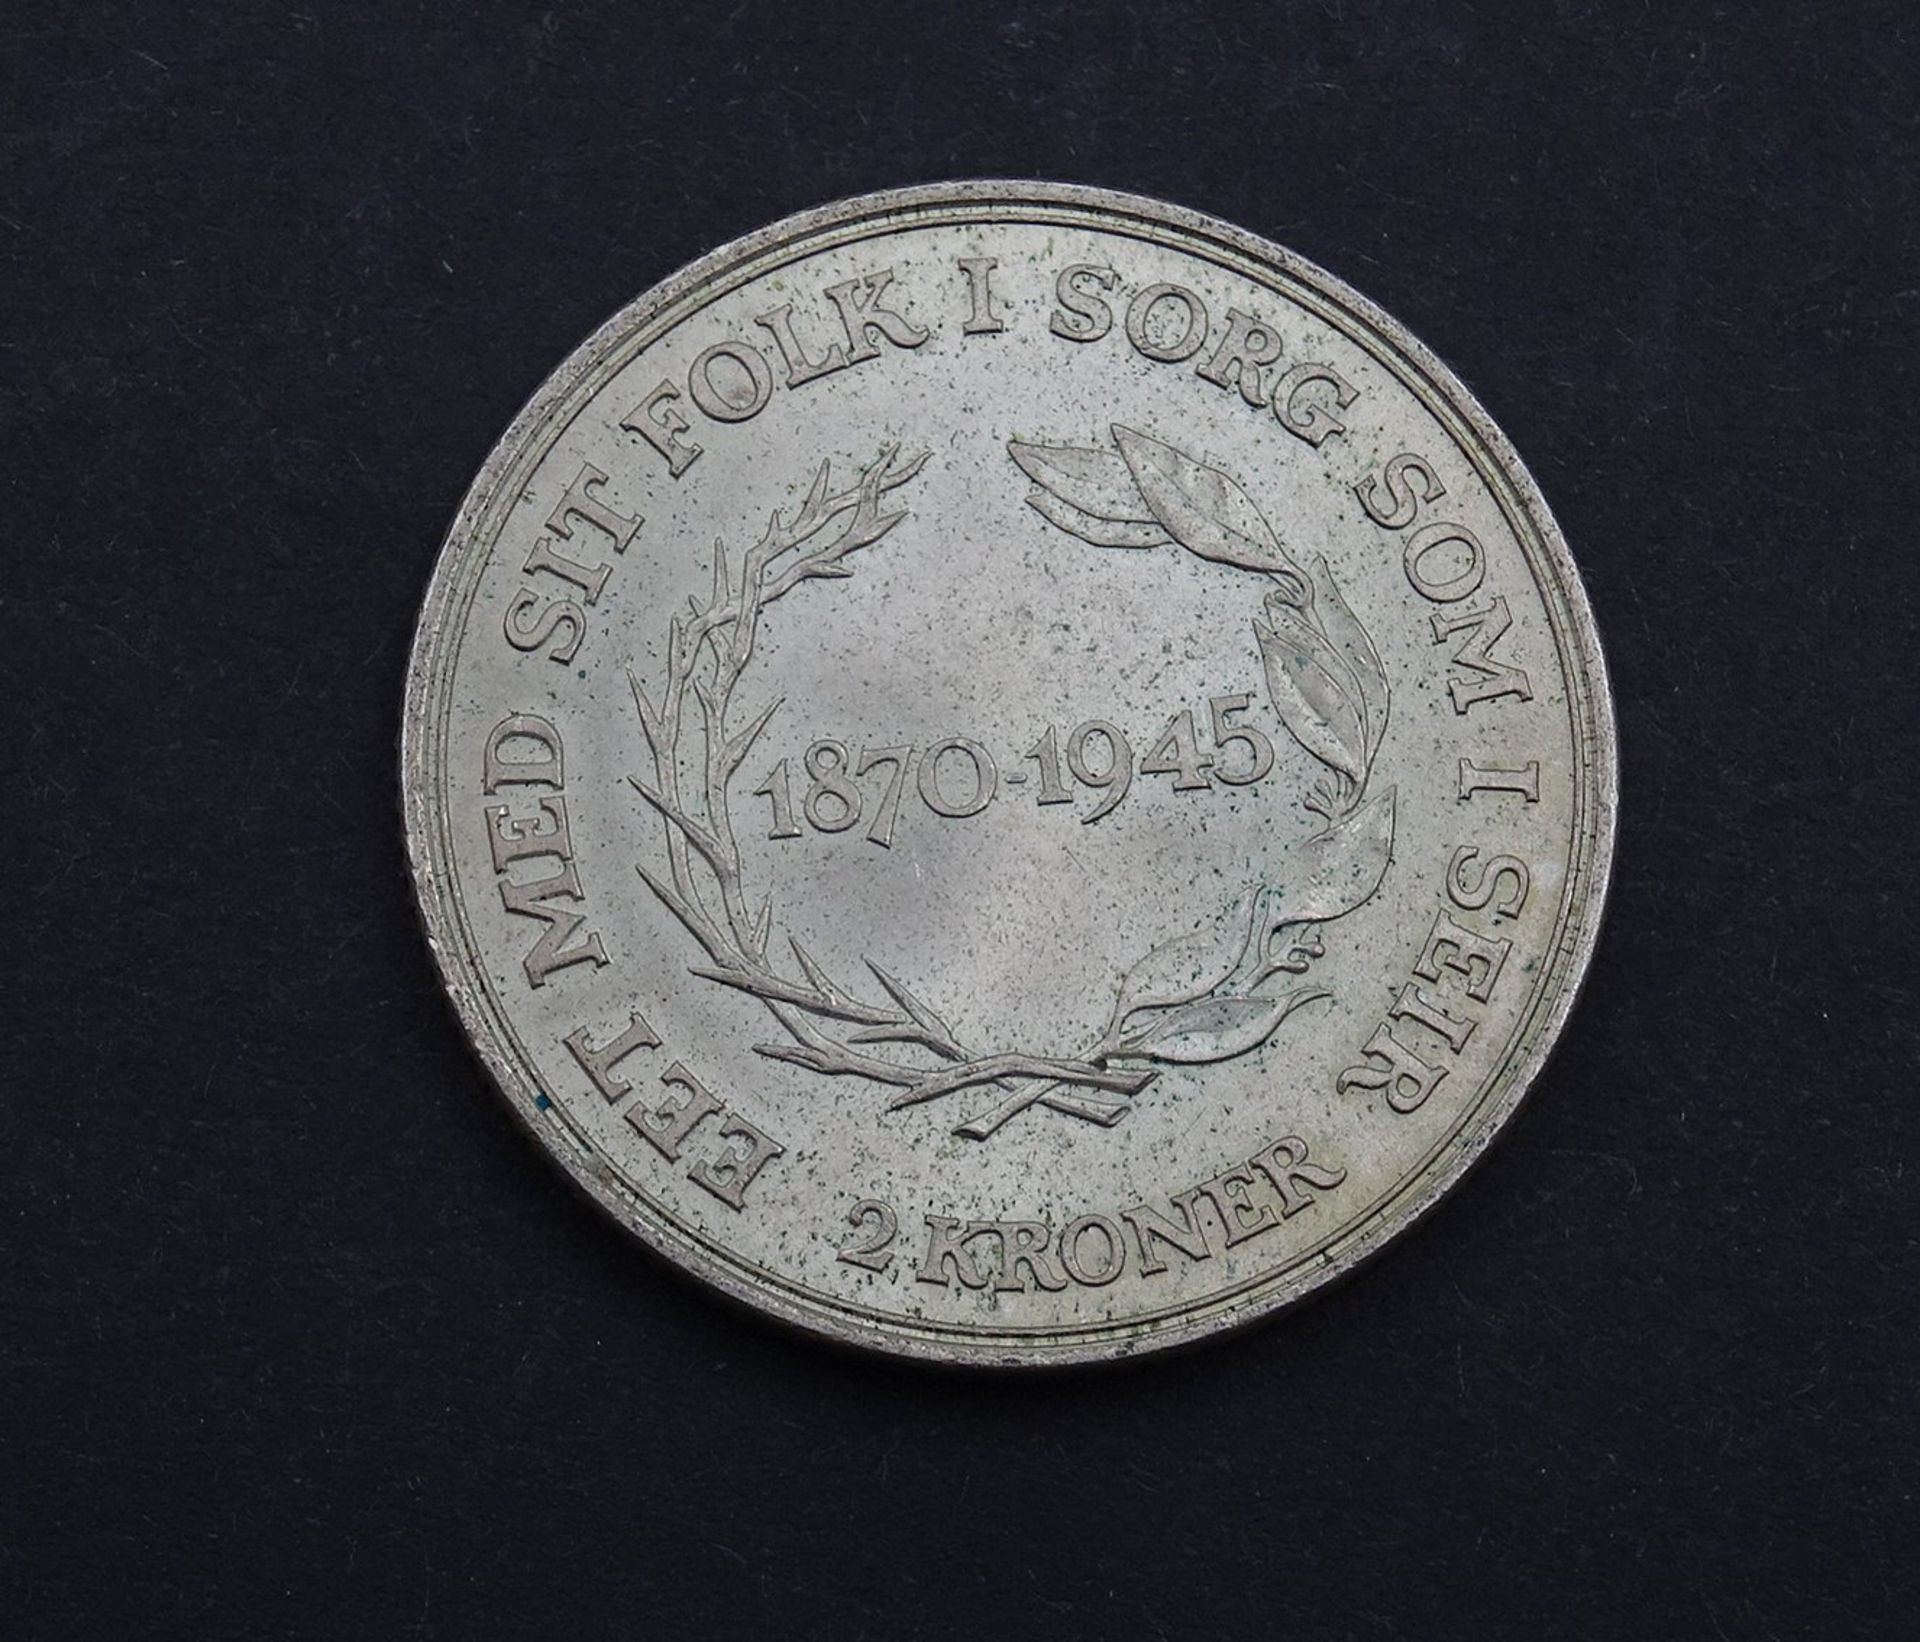 2 Kroner Dänemark 1945 D.31,0mm, 14,98g. - Bild 2 aus 2